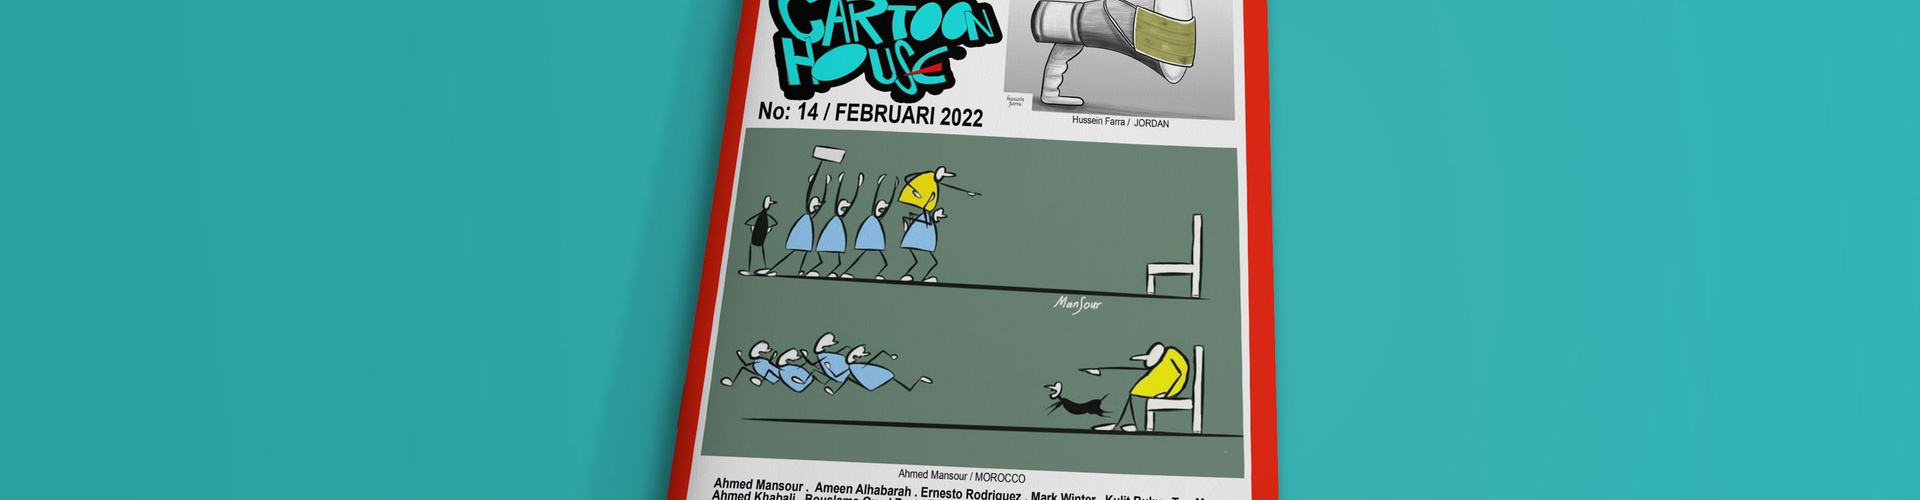 Rossem cartoon house magazine no.14-February 2022